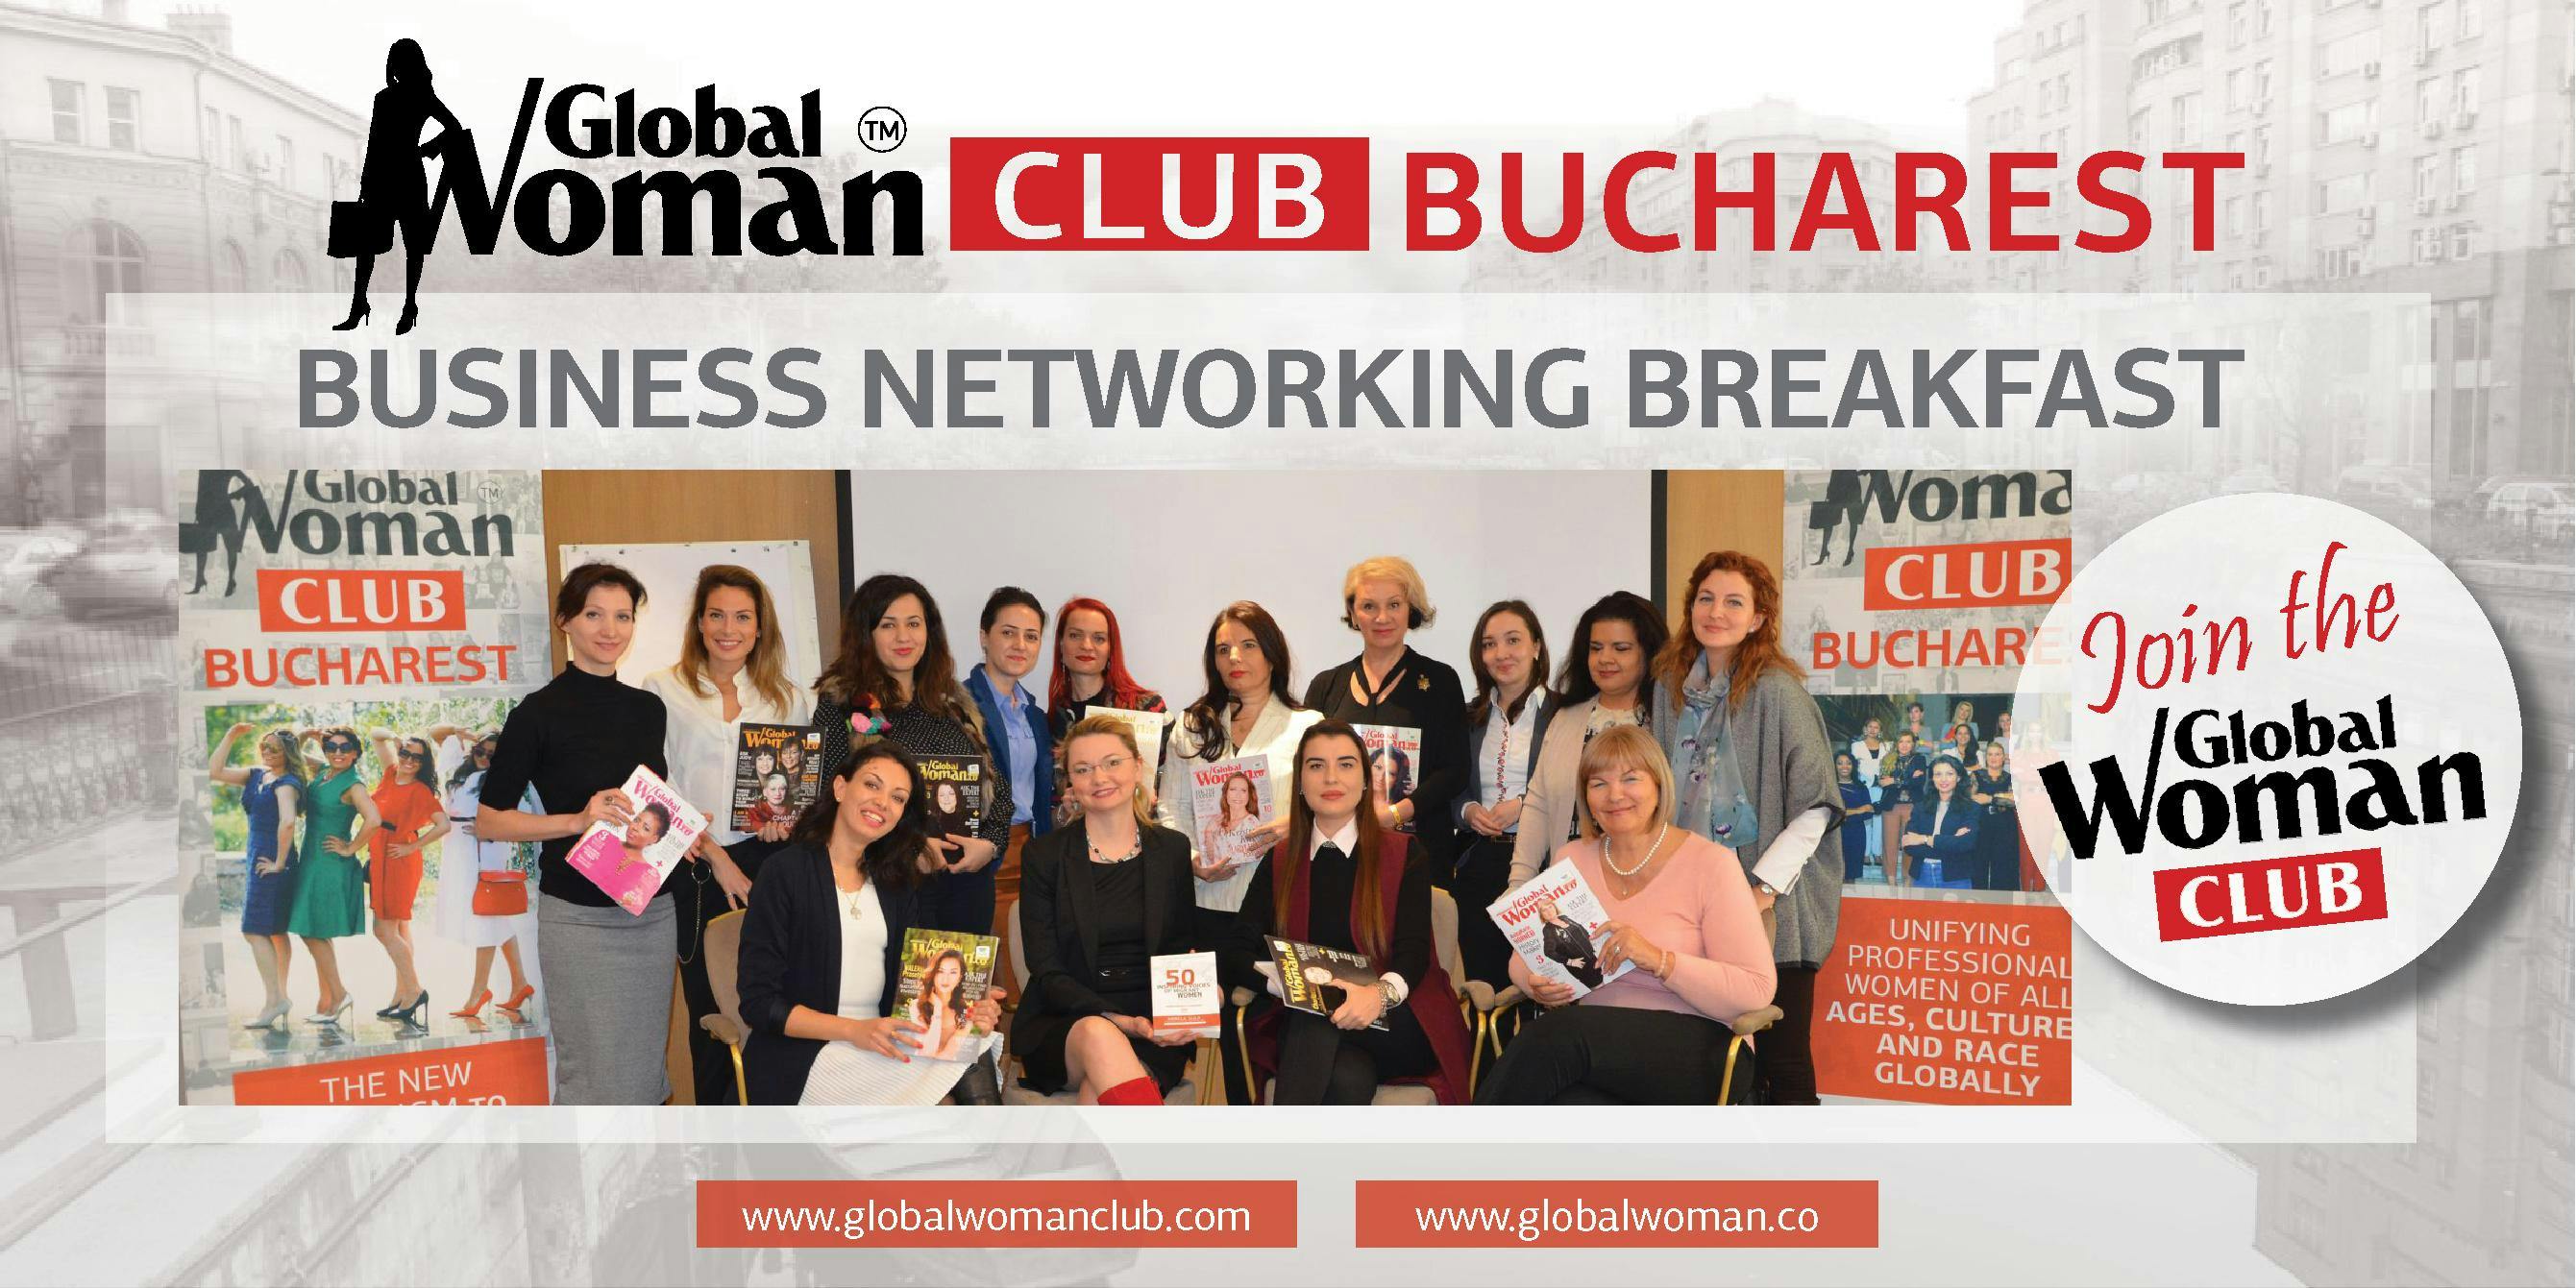 GLOBAL WOMAN CLUB BUCHAREST: BUSINESS NETWORKING BREAKFAST - JULY